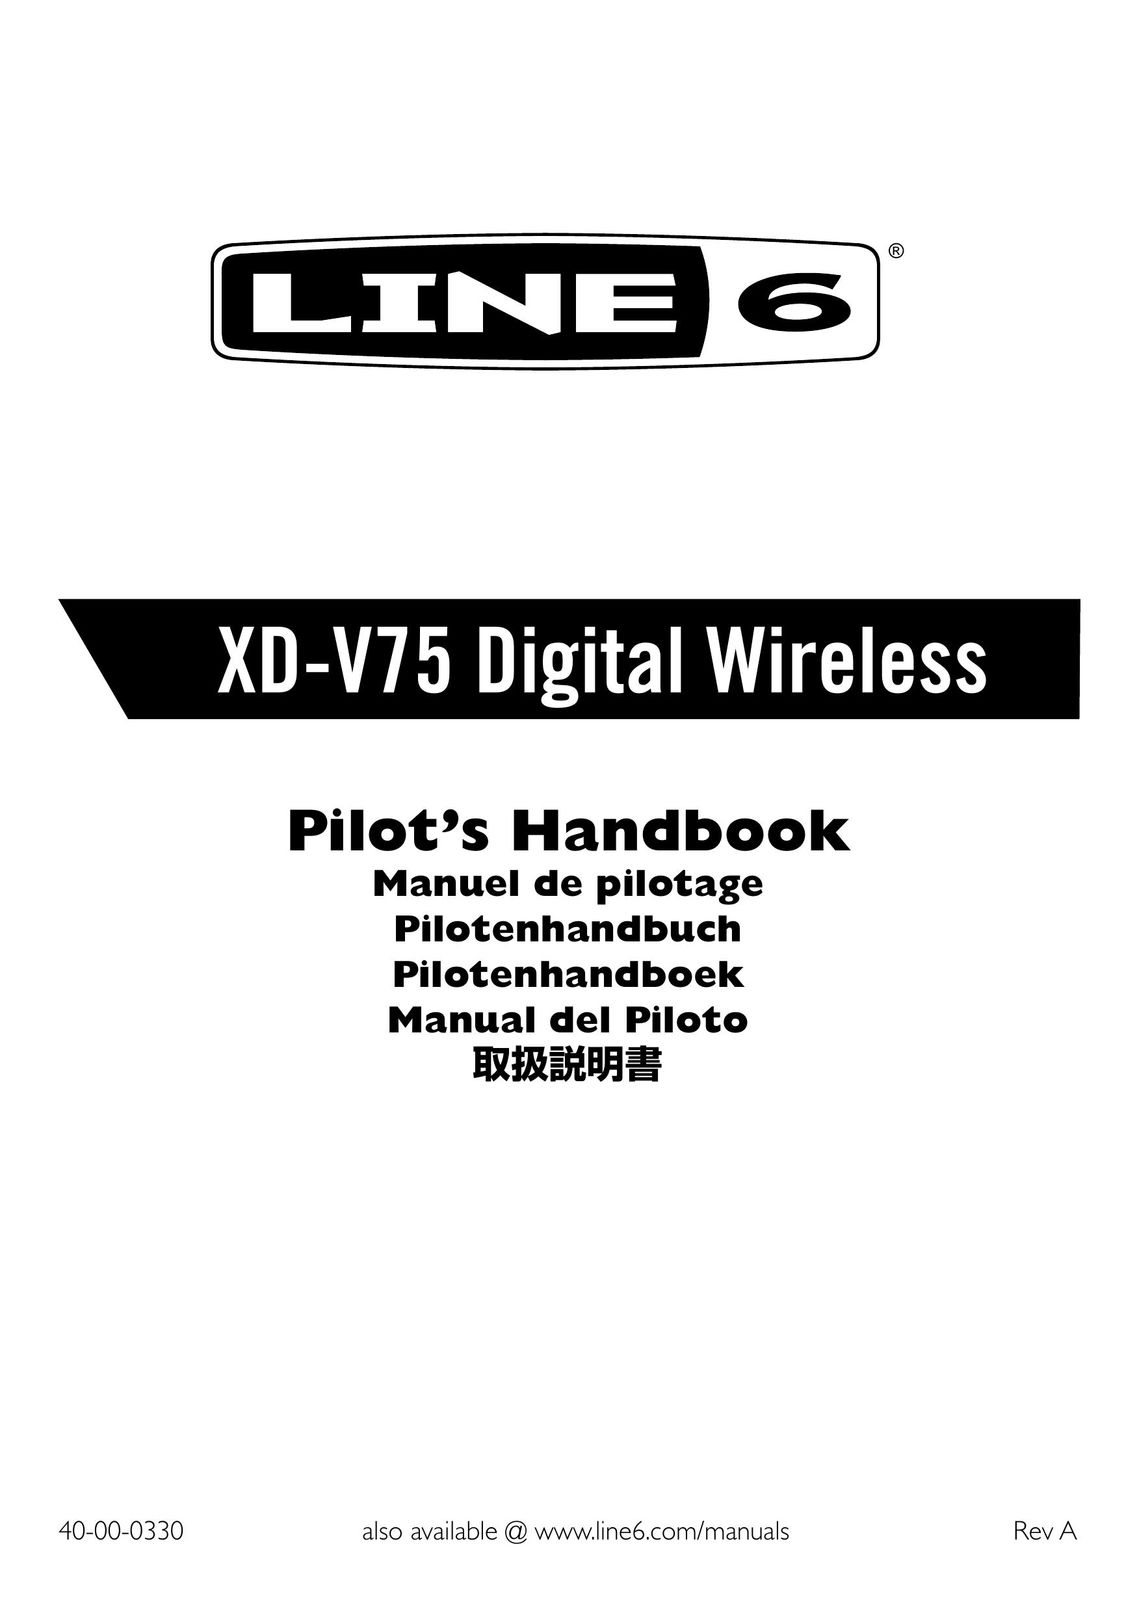 Line 6 XD-V75 Satellite Radio User Manual